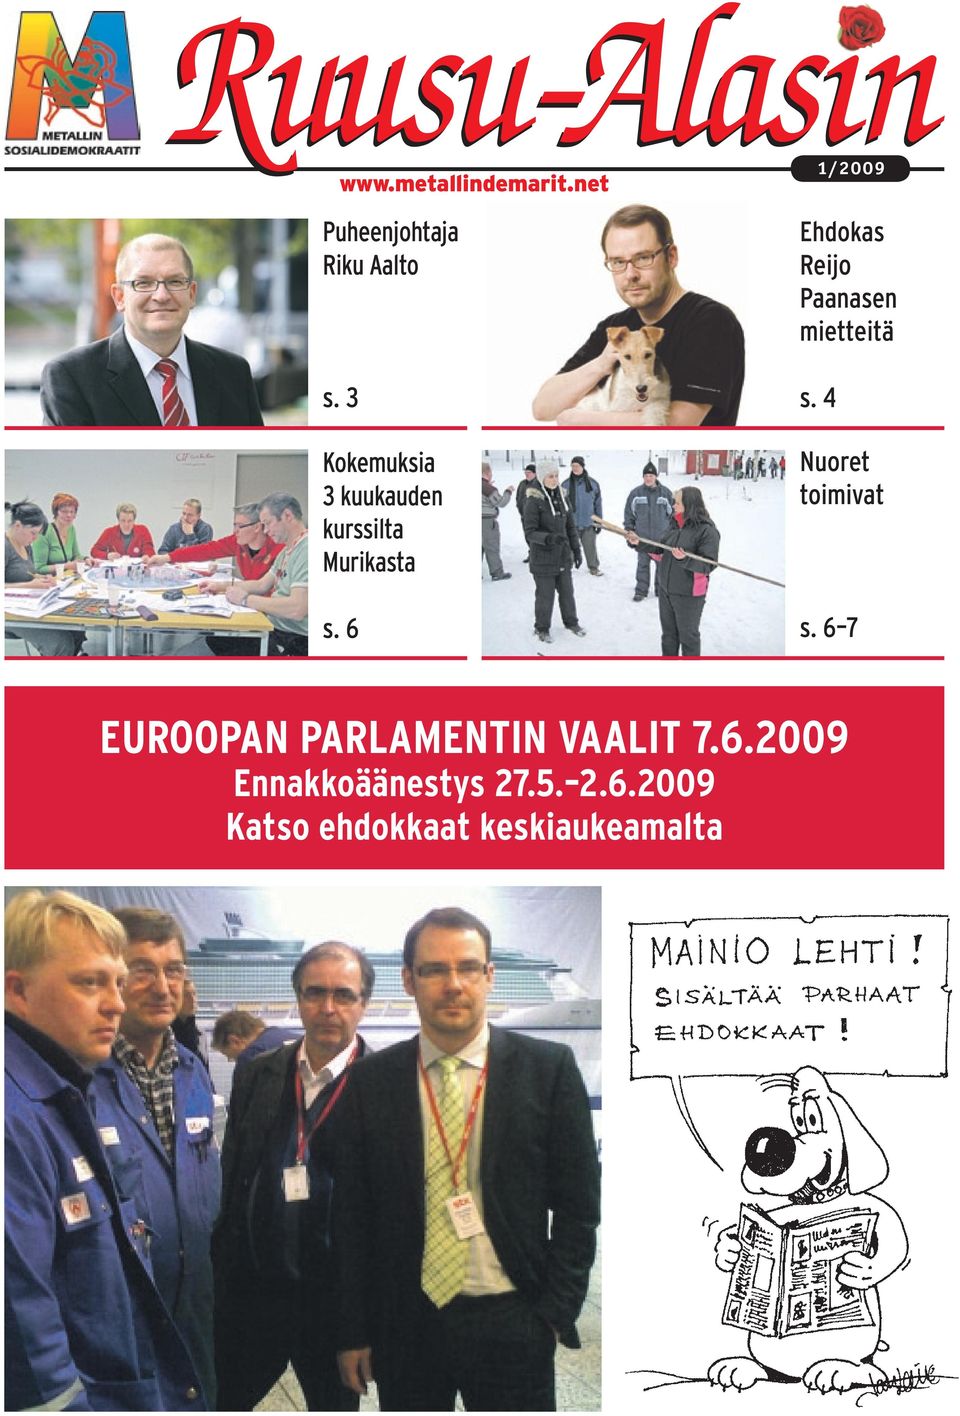 6 1/2009 Ehdokas Reijo Paanasen mietteitä s. 4 Nuoret toimivat s.